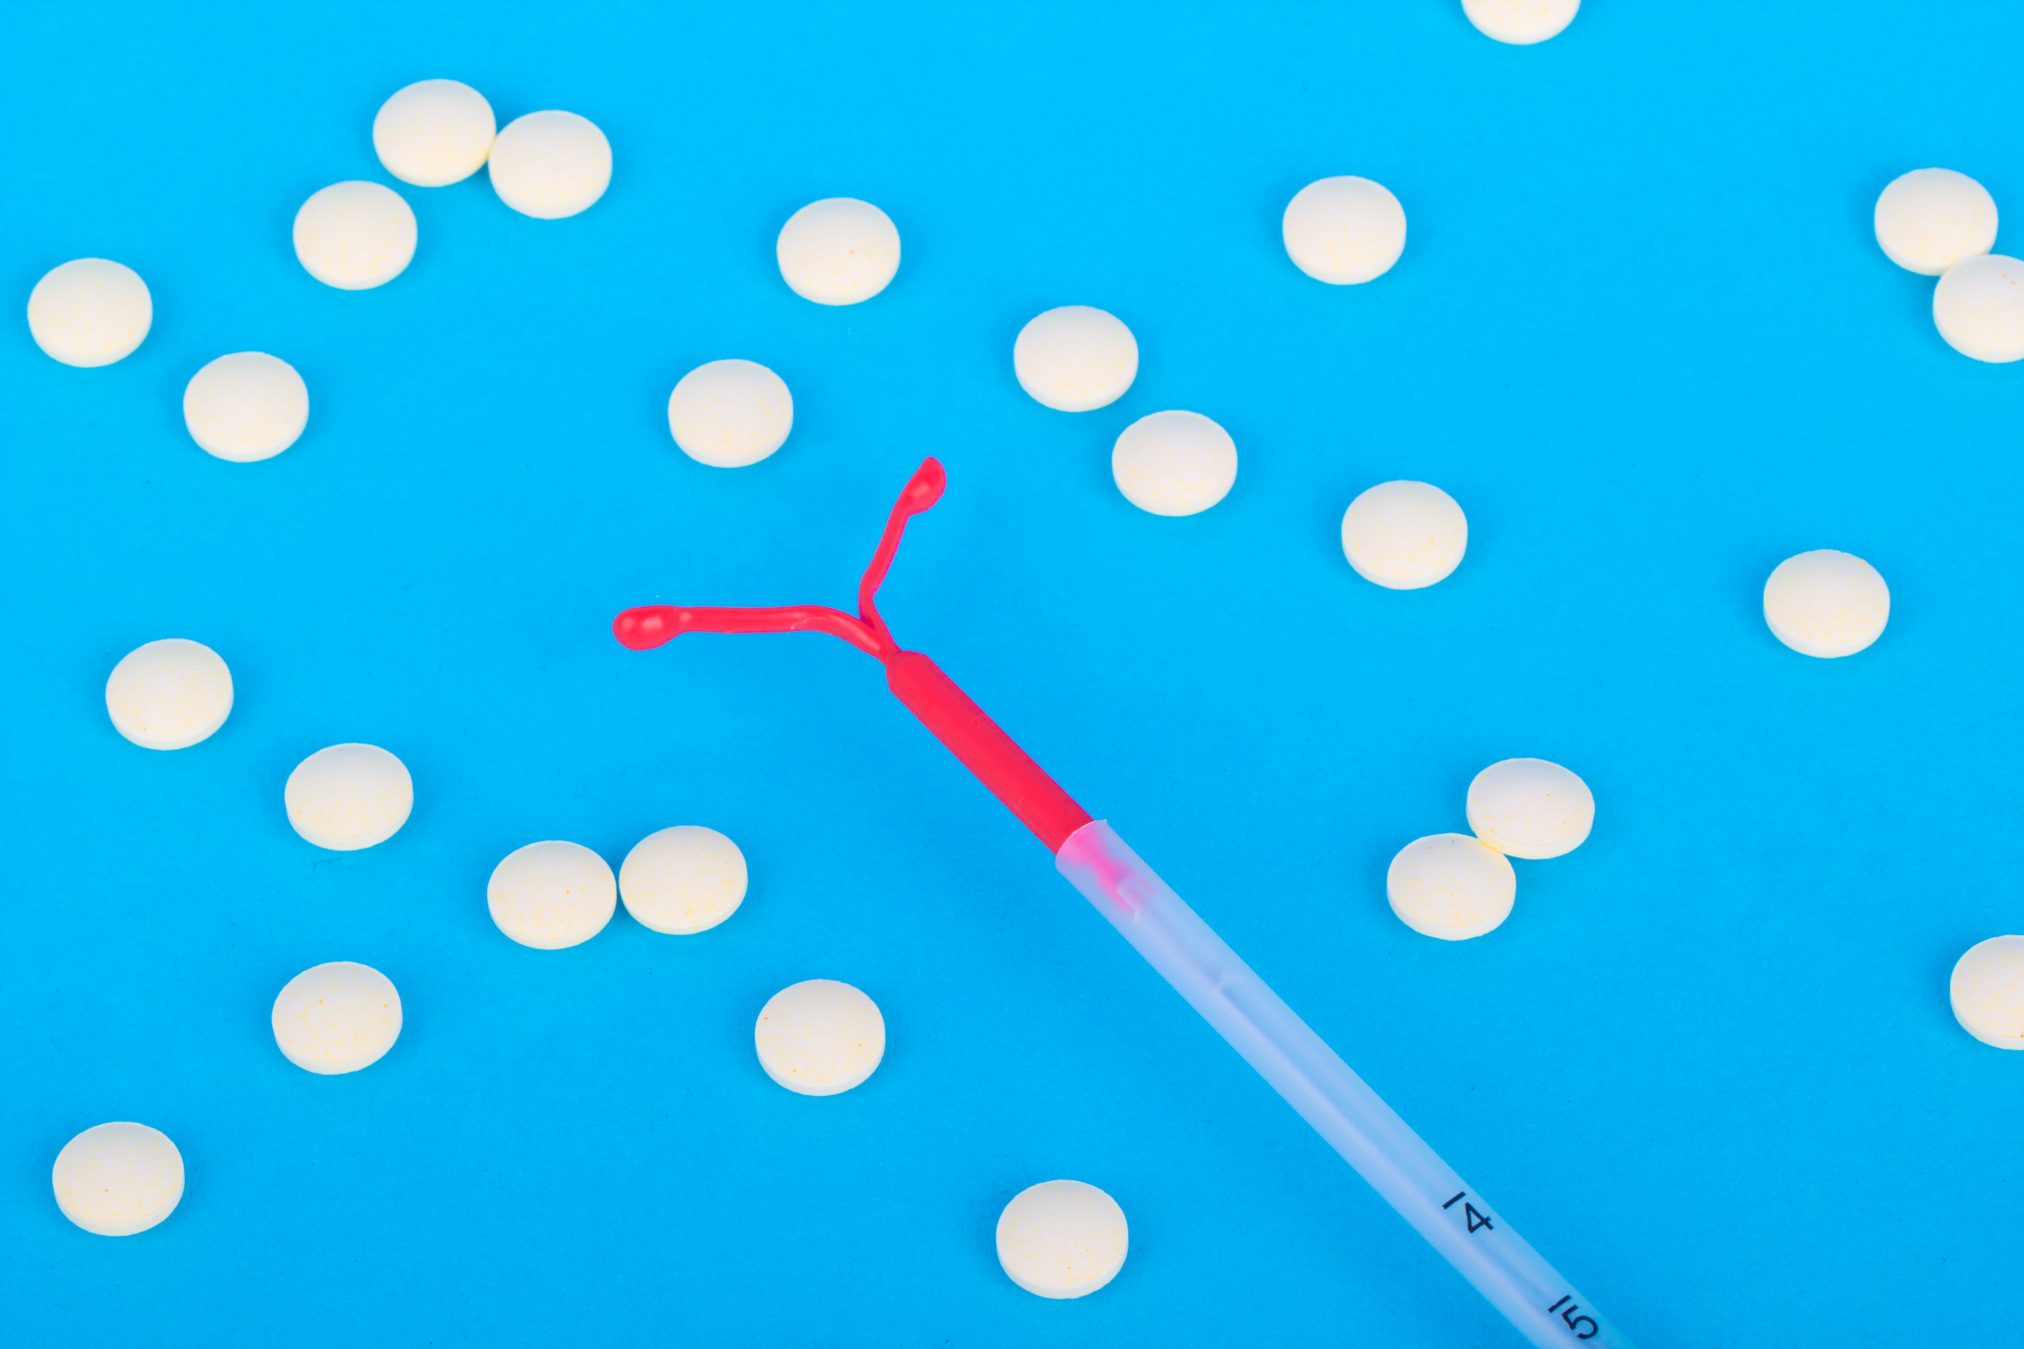 contraception contraceptive iud pill women's health reproductive reproduction